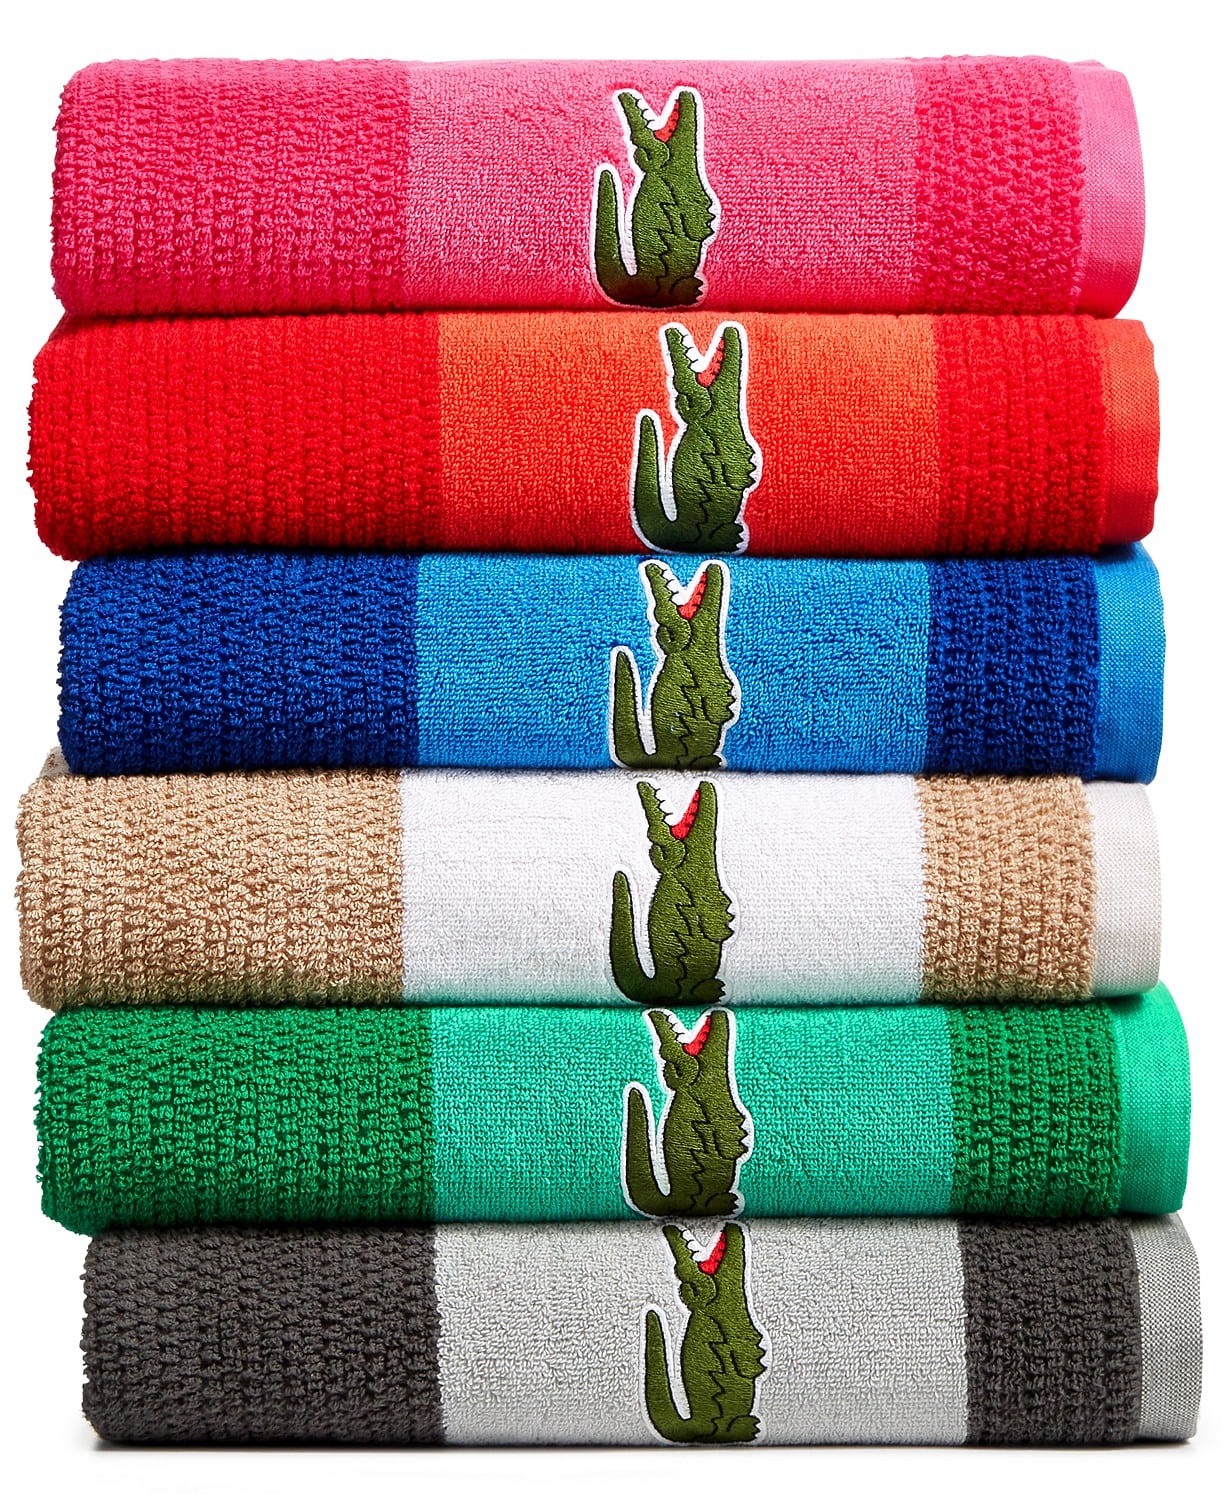 lacoste towels sale